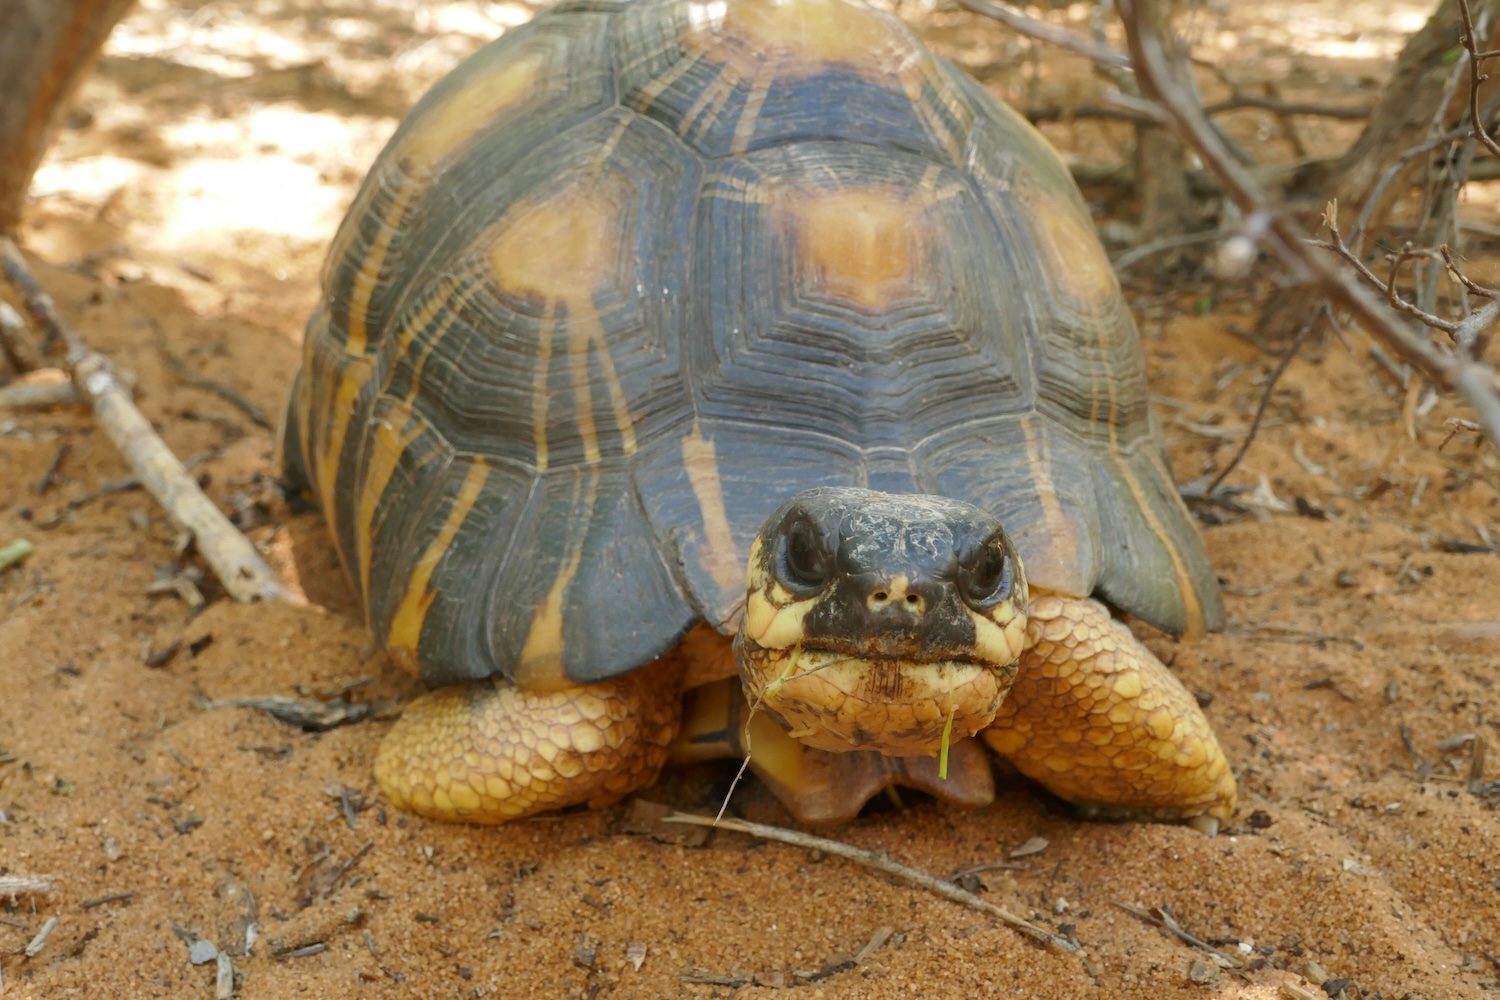 Les tortues étoilées peuvent vivre jusqu’à 100 ans dans leur habitat naturel, la forêt épineuse du sud-ouest de Madagascar. Elles sont en danger de disparition à cause de la déforestation et le braconnage © Globe Reporters